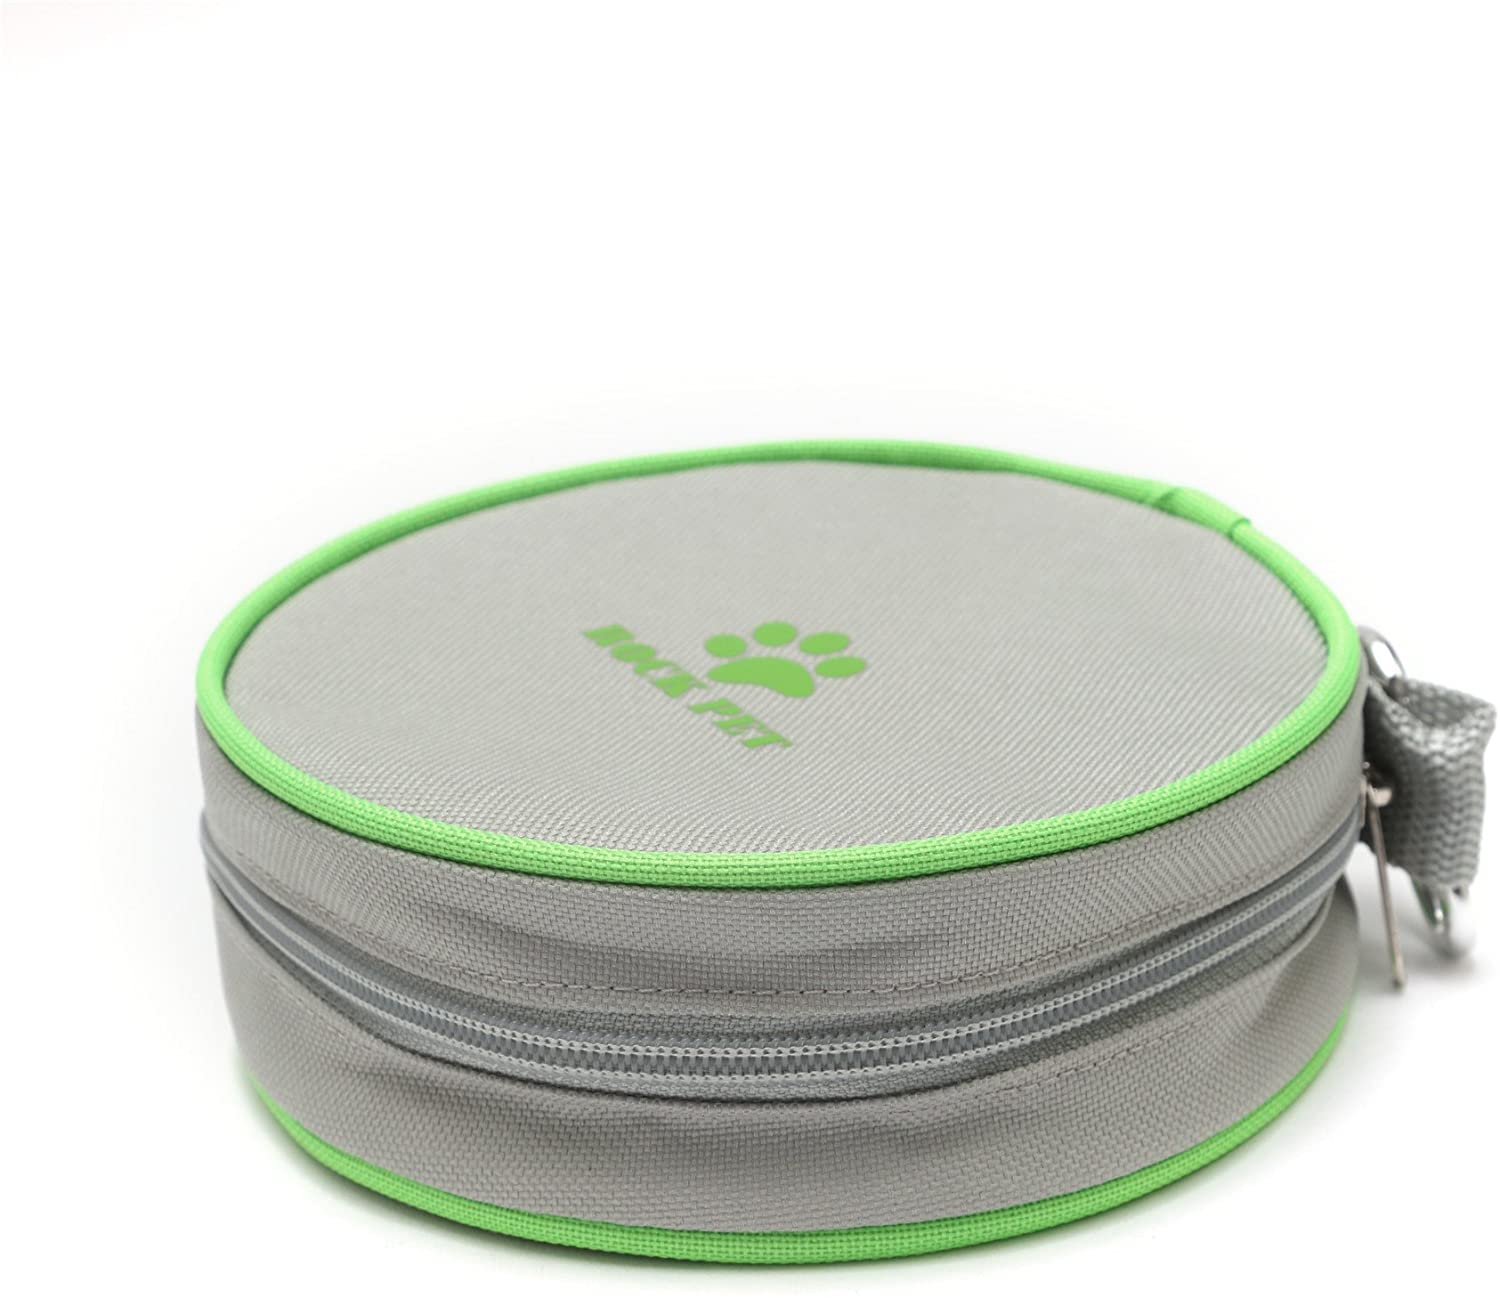  RockPet Comedero y Bebedero Plegable Portatil para Perro Gato Mascota para Viaje con Bolsa de Viaje 